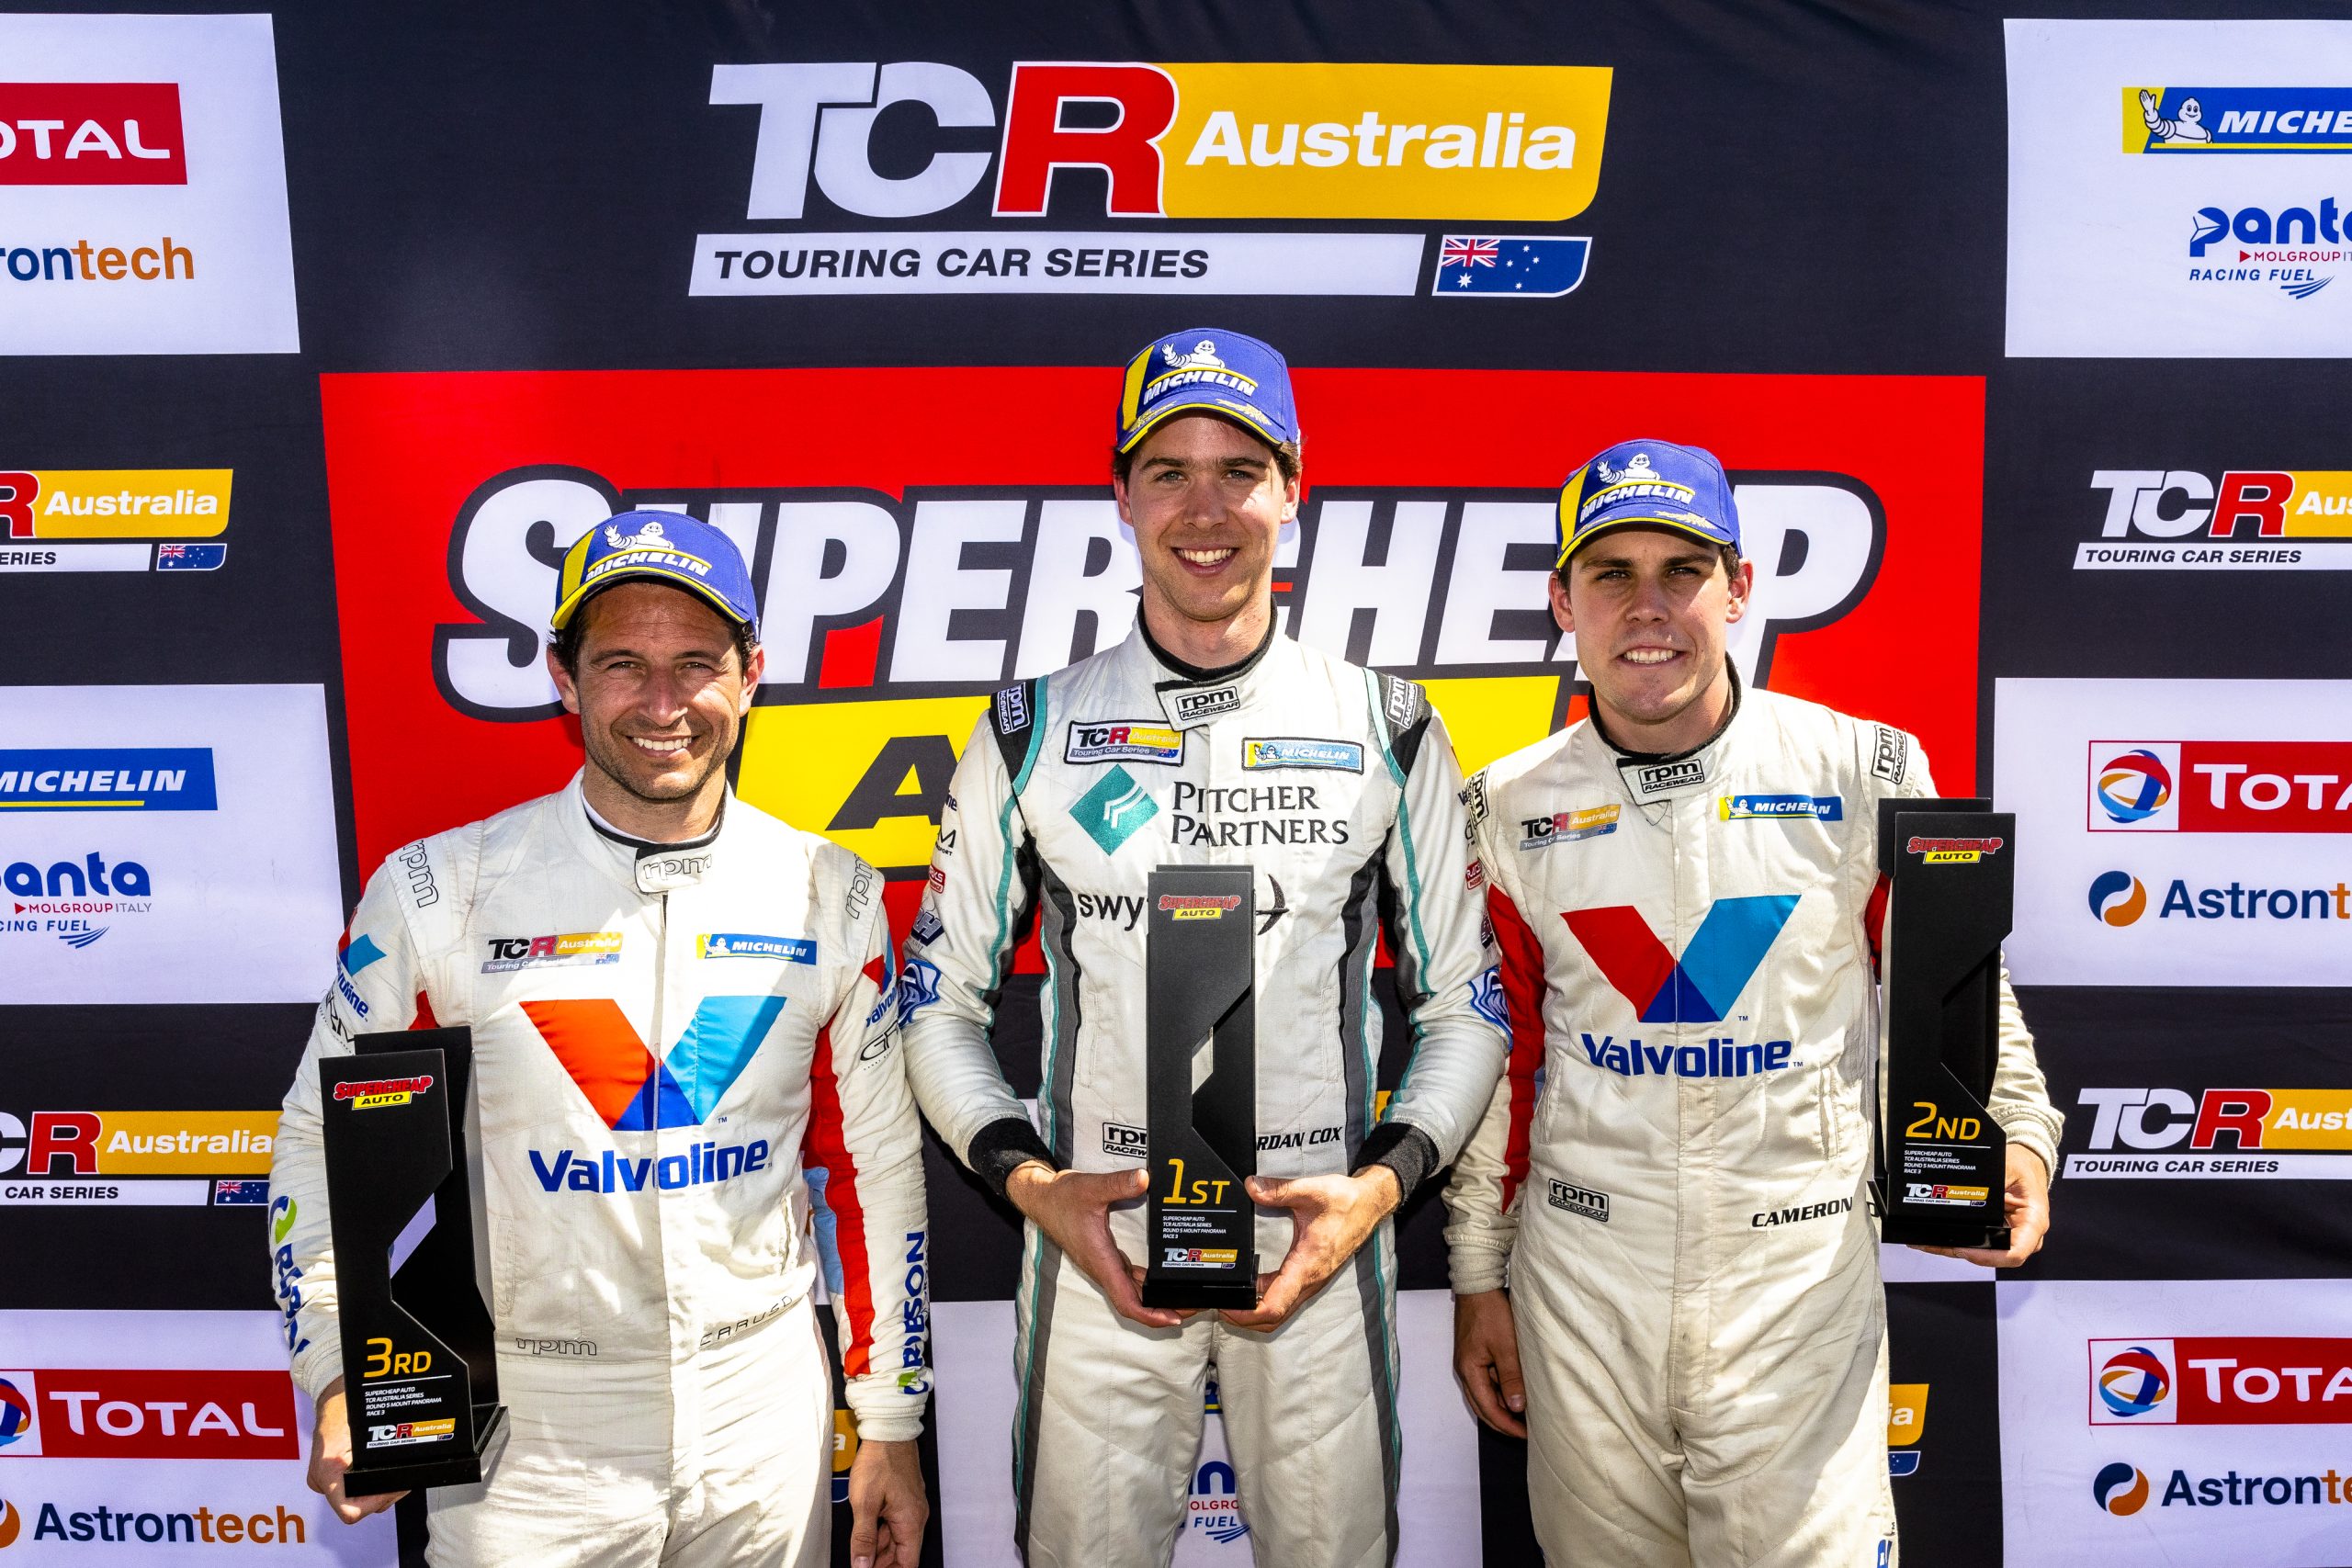 JORDAN COX DOUBLES UP IN SUPERCHEAP AUTO TCR AUSTRALIA FINALE